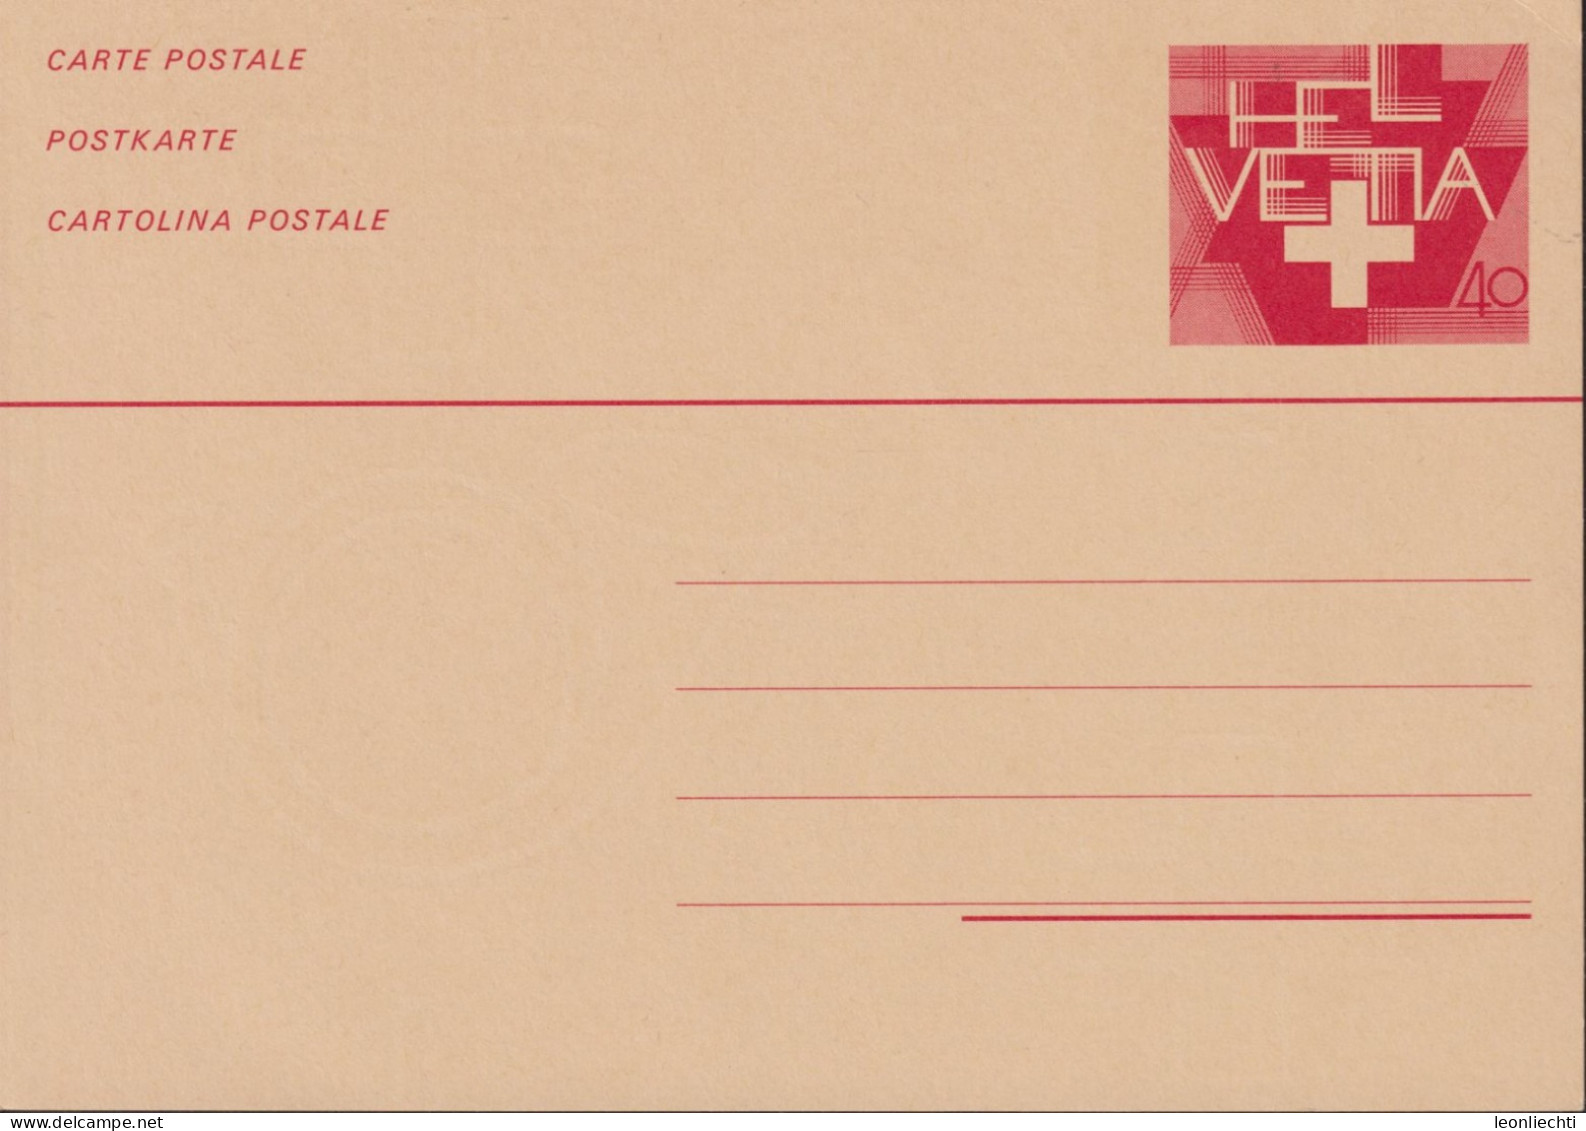 1980 Ganzsache, Neue Zeichnung Schweizerkreuz Zum: 209, 40 Cts. Rot  ** - Interi Postali